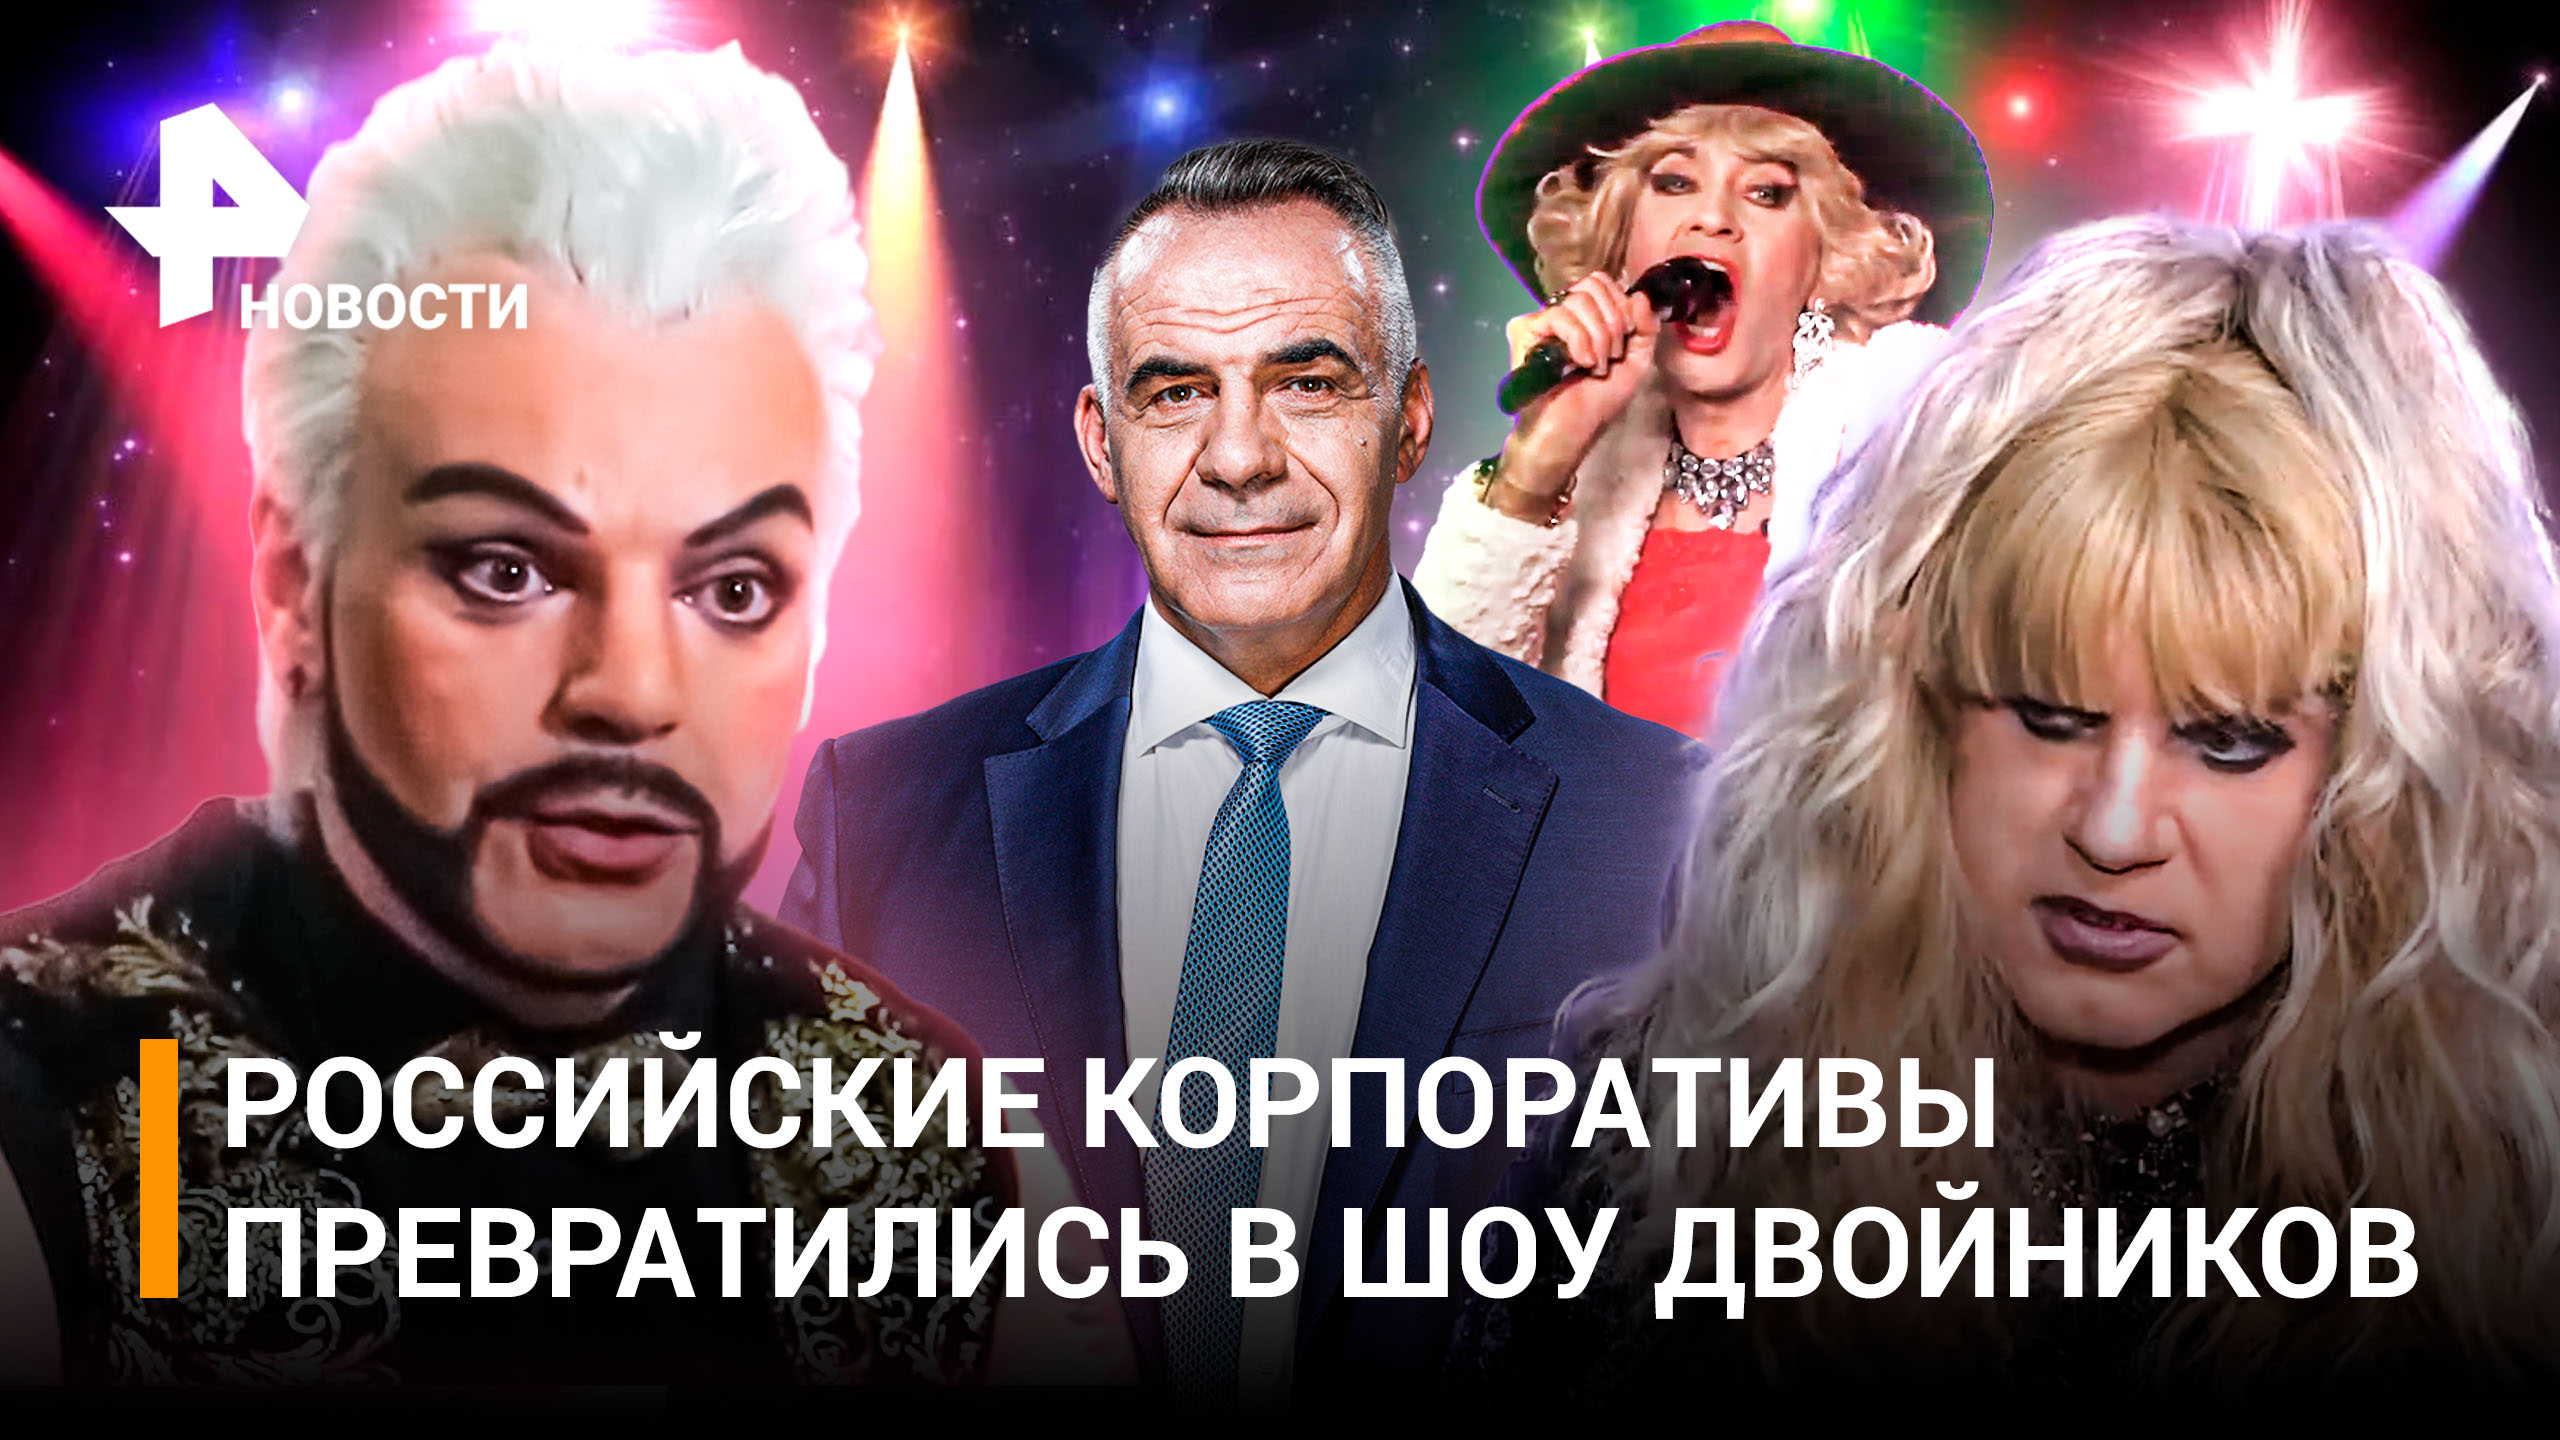 Шоу-бизнес в кризисе: спрос на двойников звезд резко вырос в России / ИТОГИ НЕДЕЛИ с Марченко